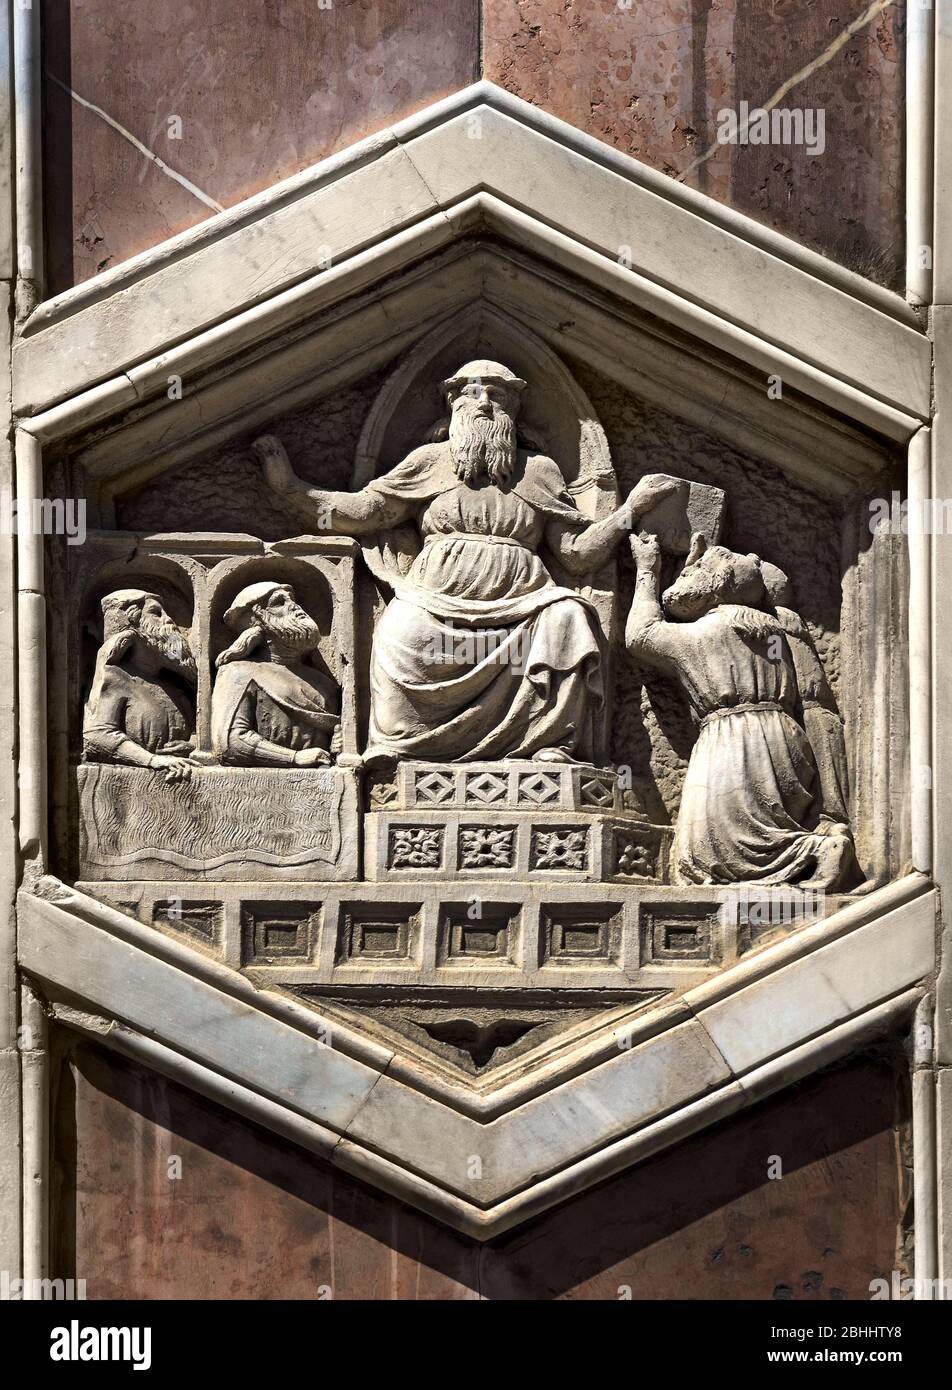 Phoroneus, inventeur du droit : Nino Pisano, 1334-36. [Phoroneus était soupçonné d'avoir arbitré un différend entre Héra et Poséidon. ] Pisano 1290 - 1348 est l'architecte et sculpteur atelier a commencé à propos de 1336 avec les reliefs de l'Hôtel Campanile la Cattedrale di Santa Maria del Fiore de Florence - Florence Italie Cathédrale de Sainte Marie de la fleur 1336 Florence Italie Banque D'Images